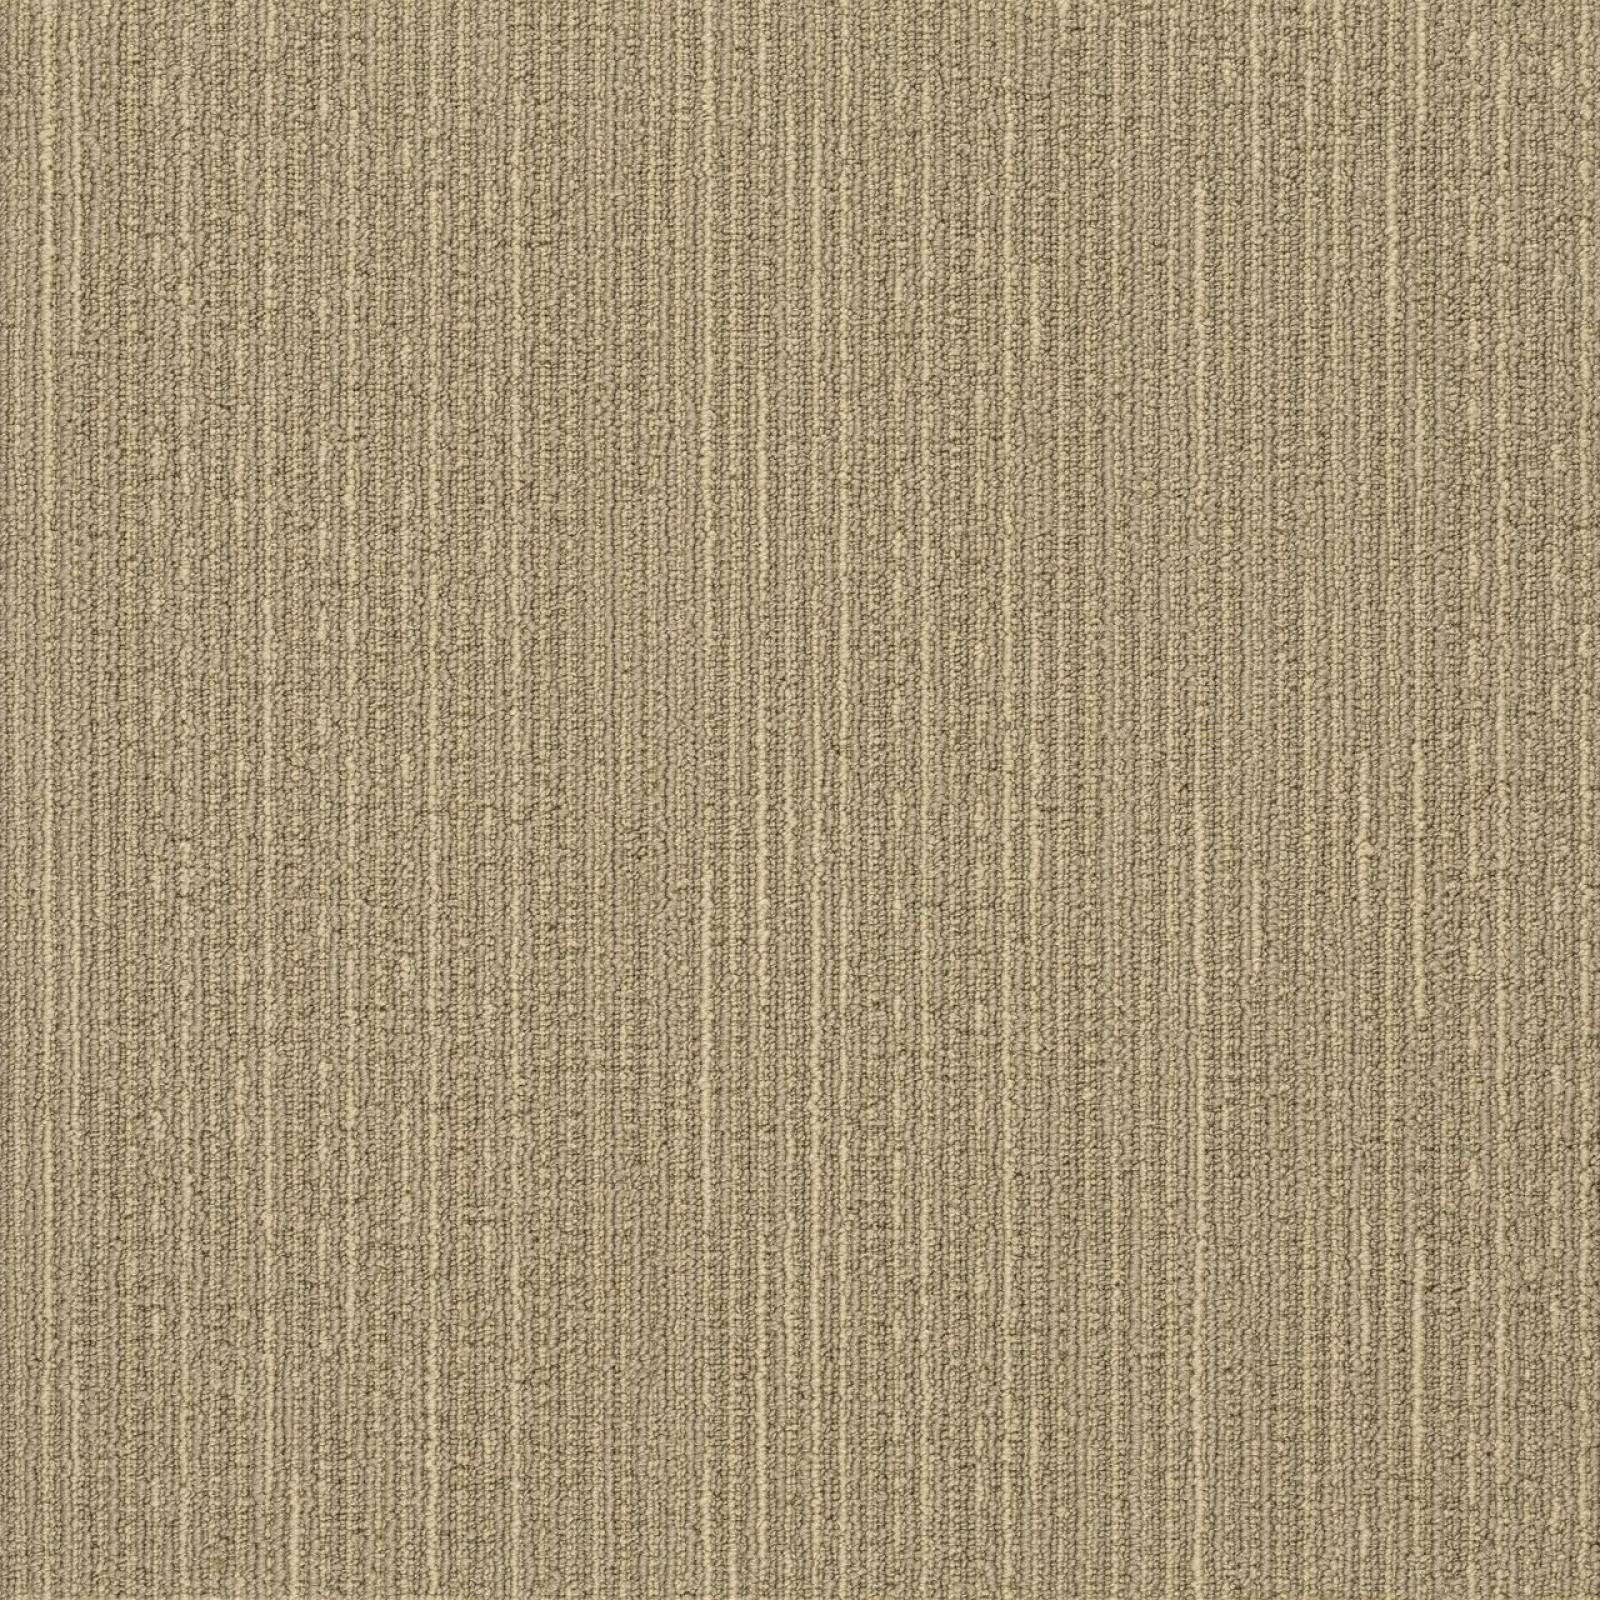 Vzor - 1521 golden sand